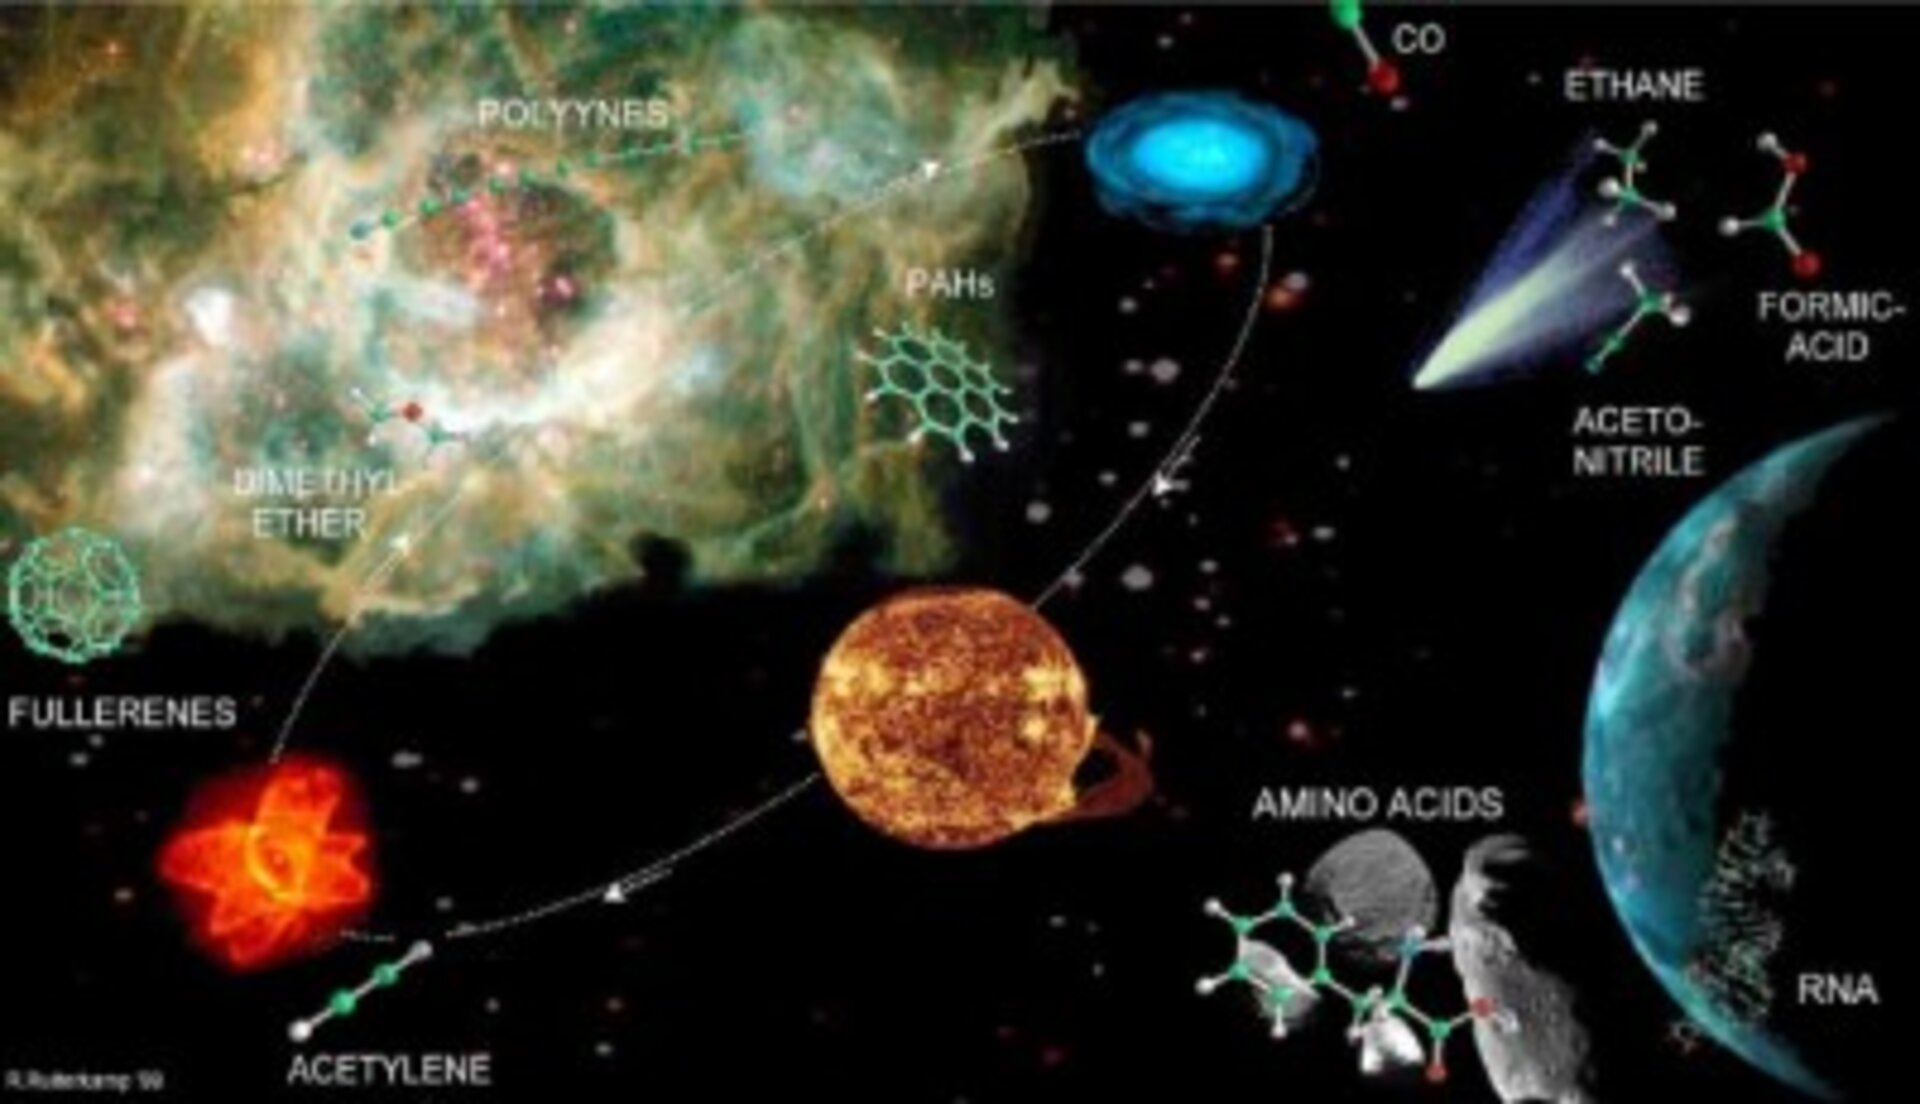 Voorstelling van de moleculaire reis vanuit kosmische gaswolken naar de aarde.